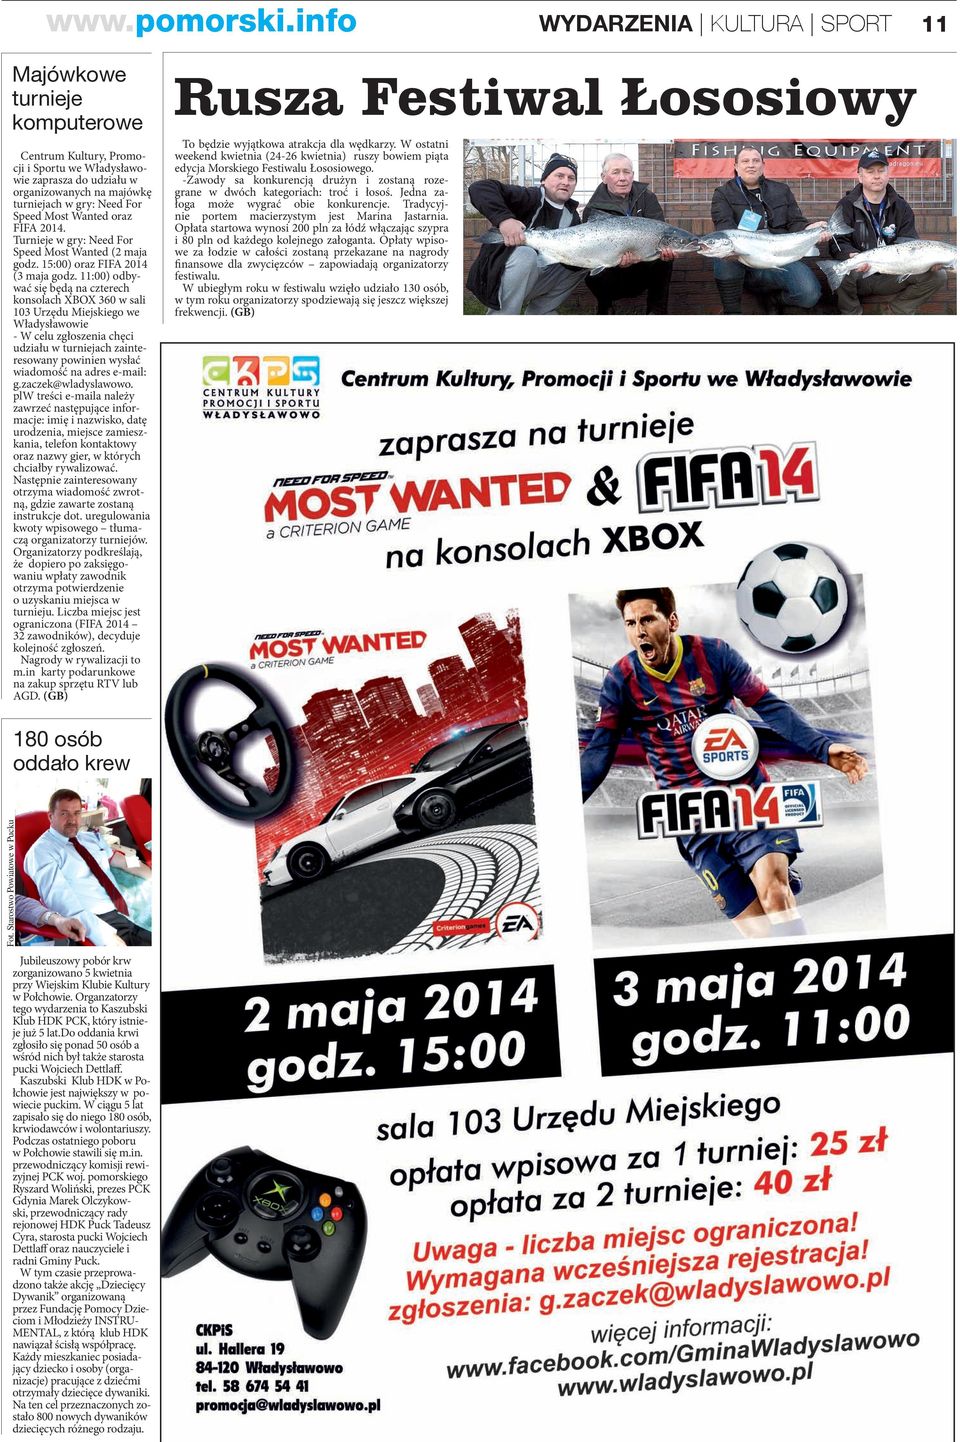 Turnieje w gry: Need For Speed Most Wanted (2 maja godz. 15:00) oraz FIFA 2014 (3 maja godz.